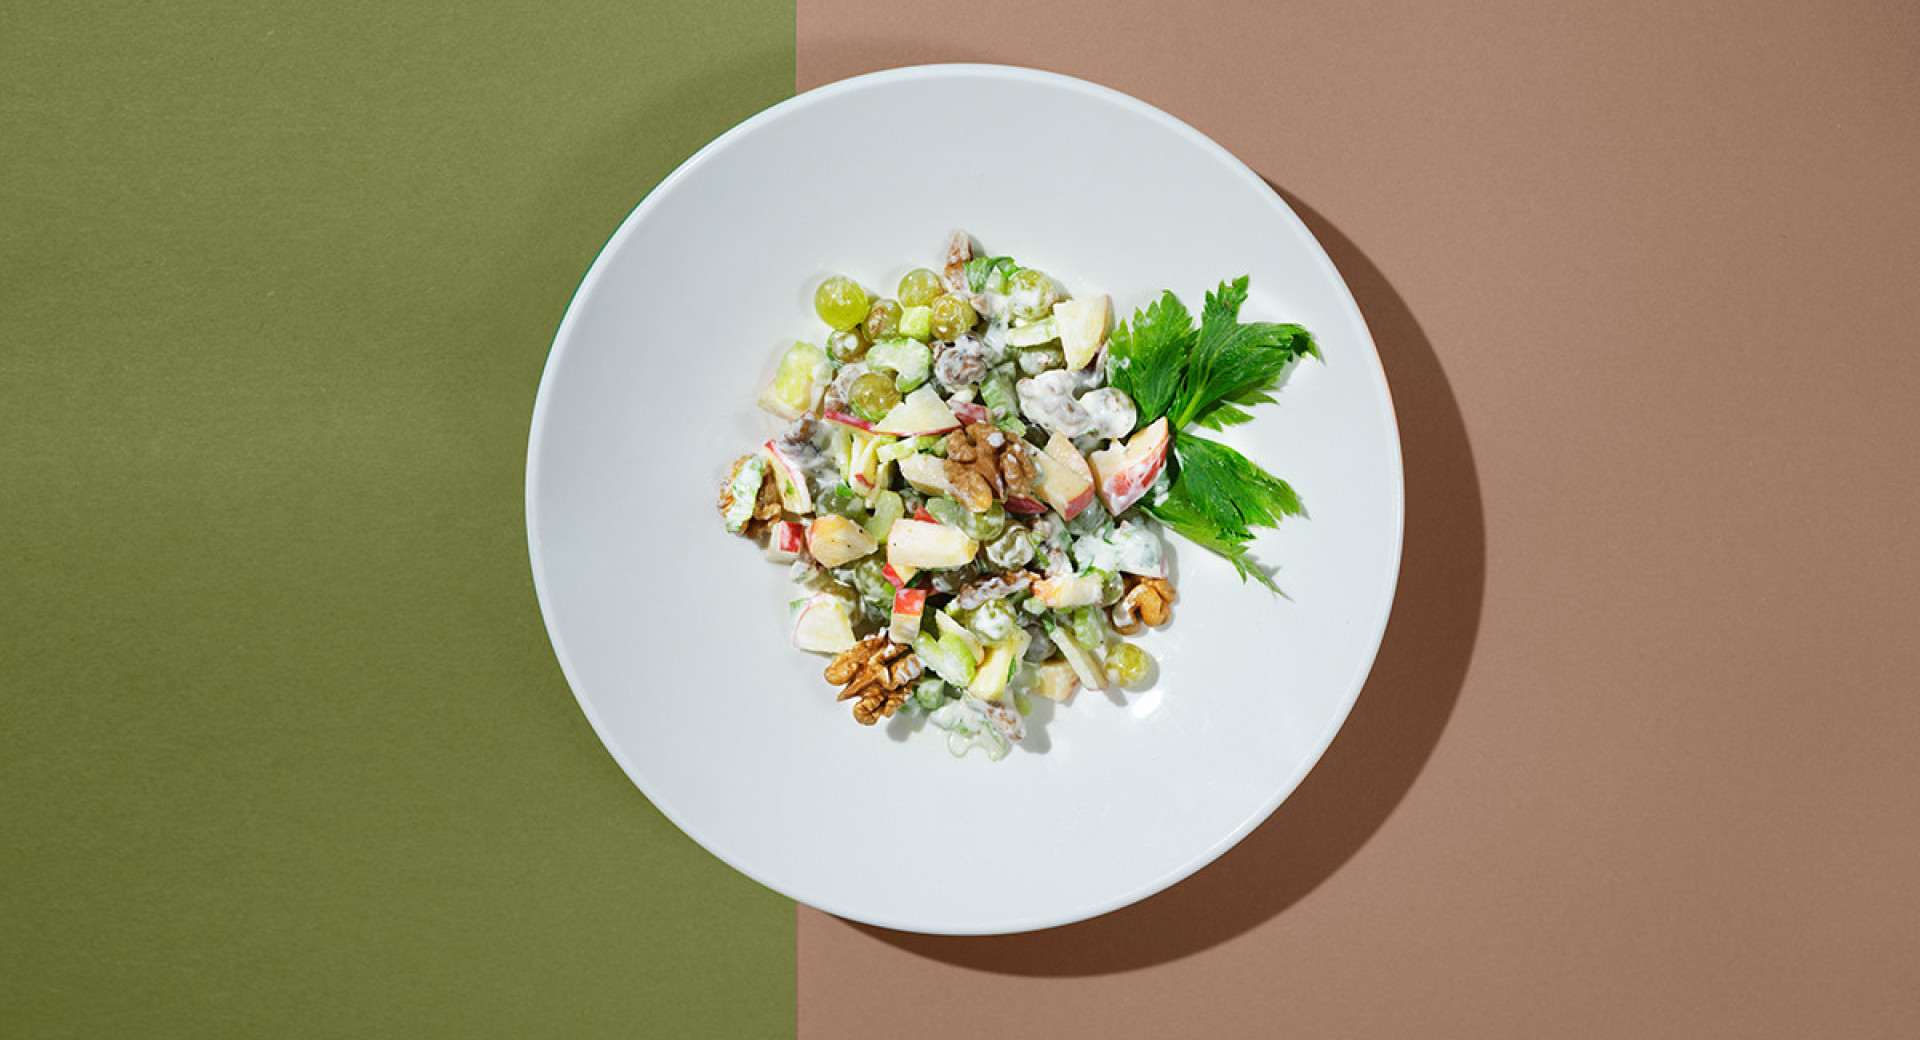 bel kroznik na olivno zeleni in roza podlagi. na krozniku licno predstavljena solata s polivko, okrasena z orehi in listi petersilja